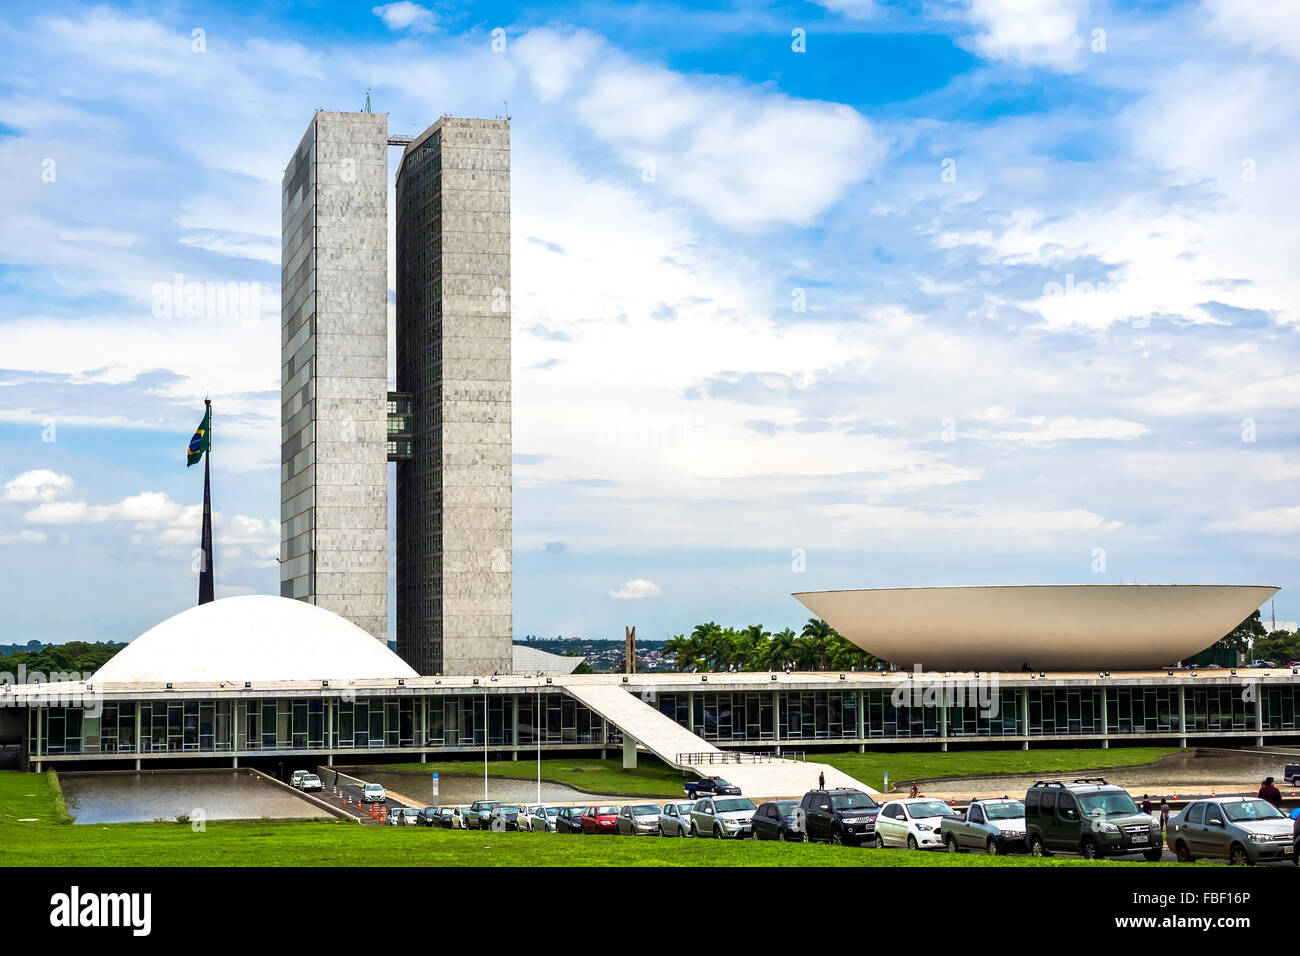 Brasilia, Brasile - 20 Novembre 2015: Vista della nazionale brasiliana palazzo dei congressi a Brasilia, capitale del Brasile. Foto Stock